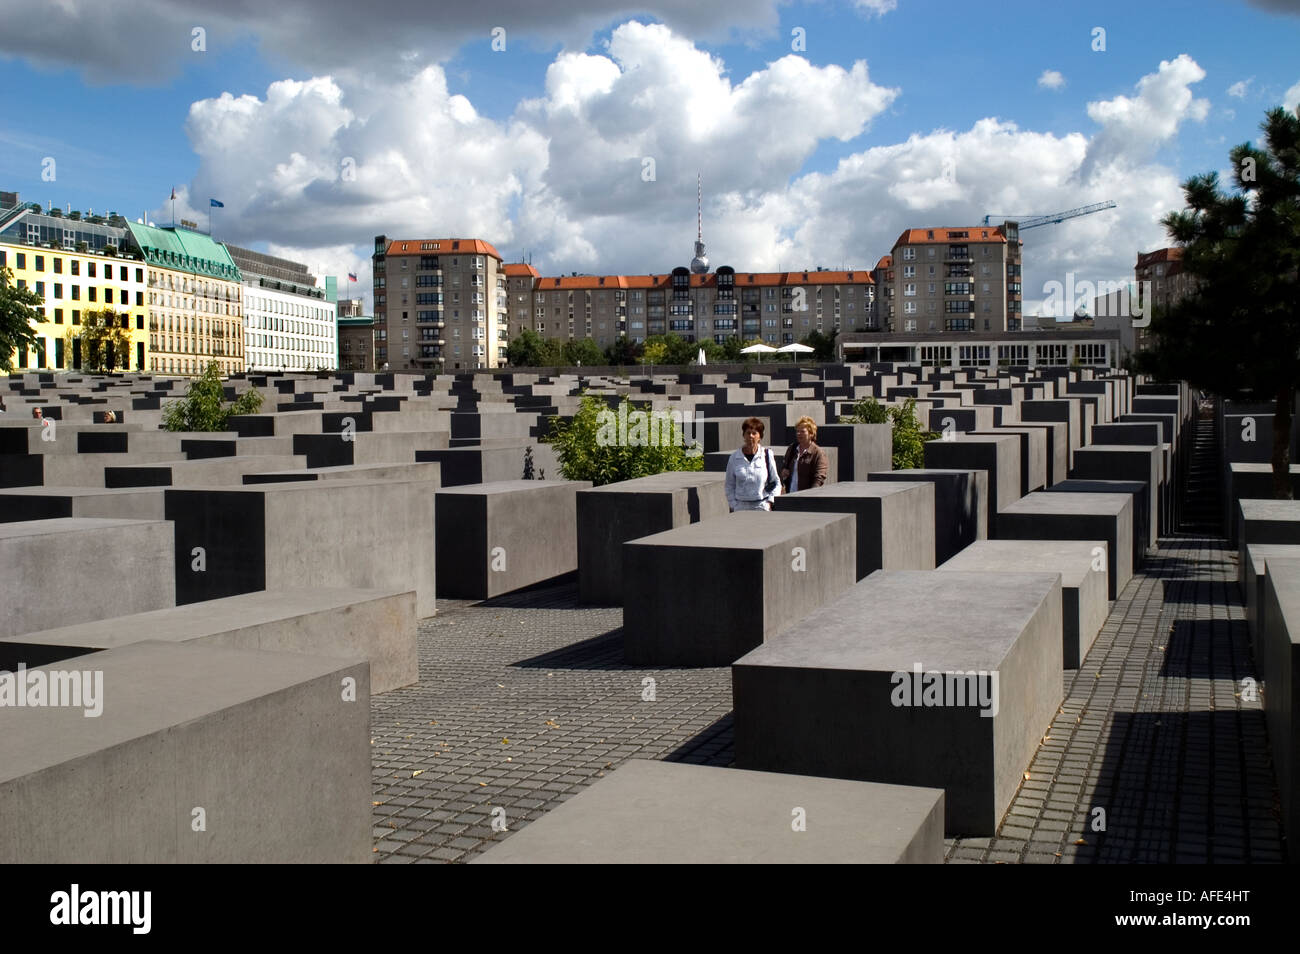 Memoria del Holocausto judío visión abstracta de las piedras grises rectangulares Eberstrasse monumento diseñado por el arquitecto Peter Eisenman Berlín ALEMANIA Foto de stock